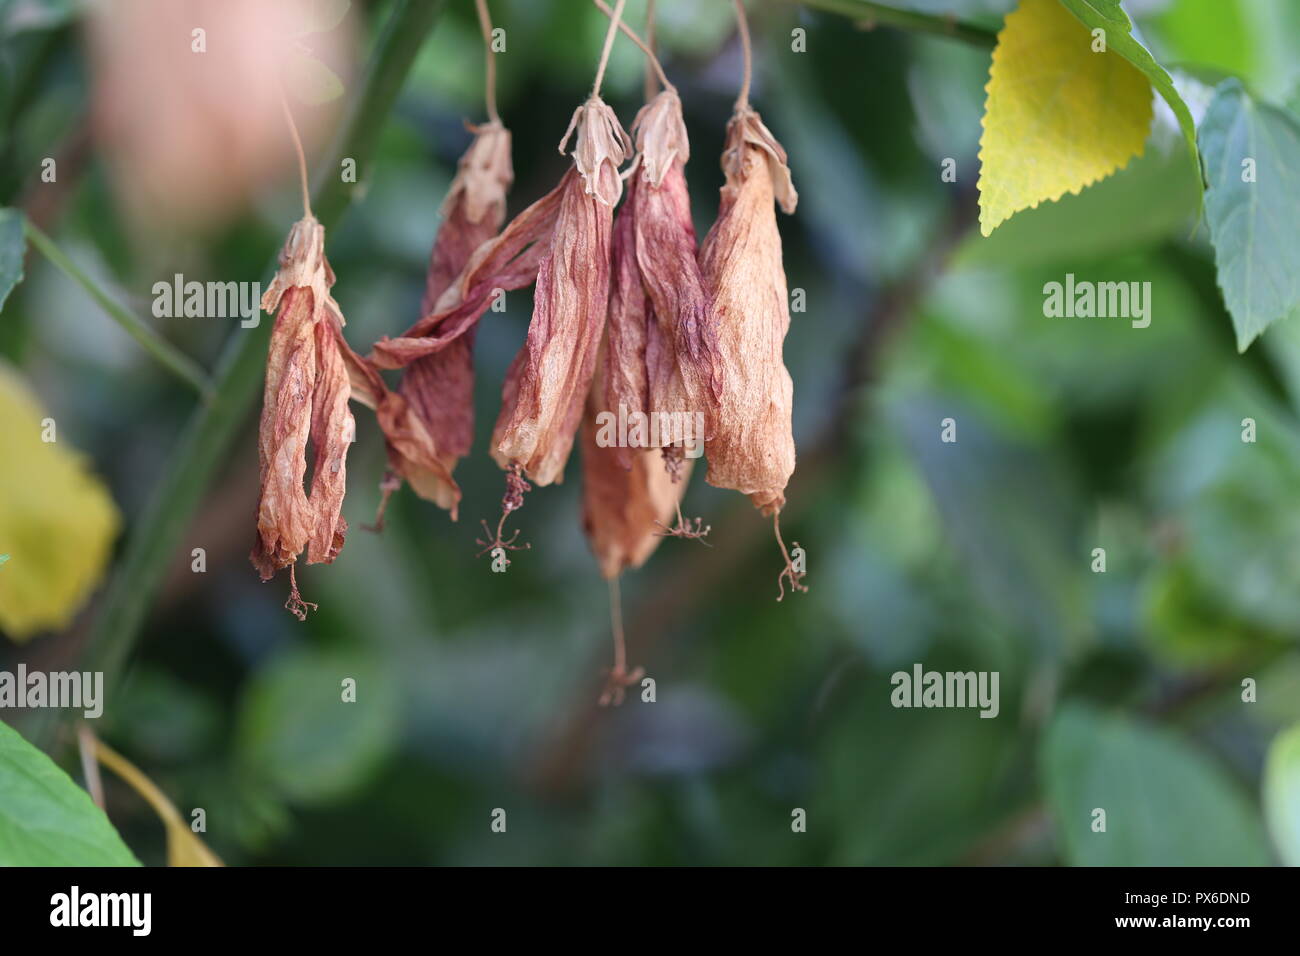 Asciugare i fiori di ibisco. Rossi Secchi Hibiscus rosa-sinensis fiori appesi prima di cadere fuori. La macchia verde in background. Foto Stock